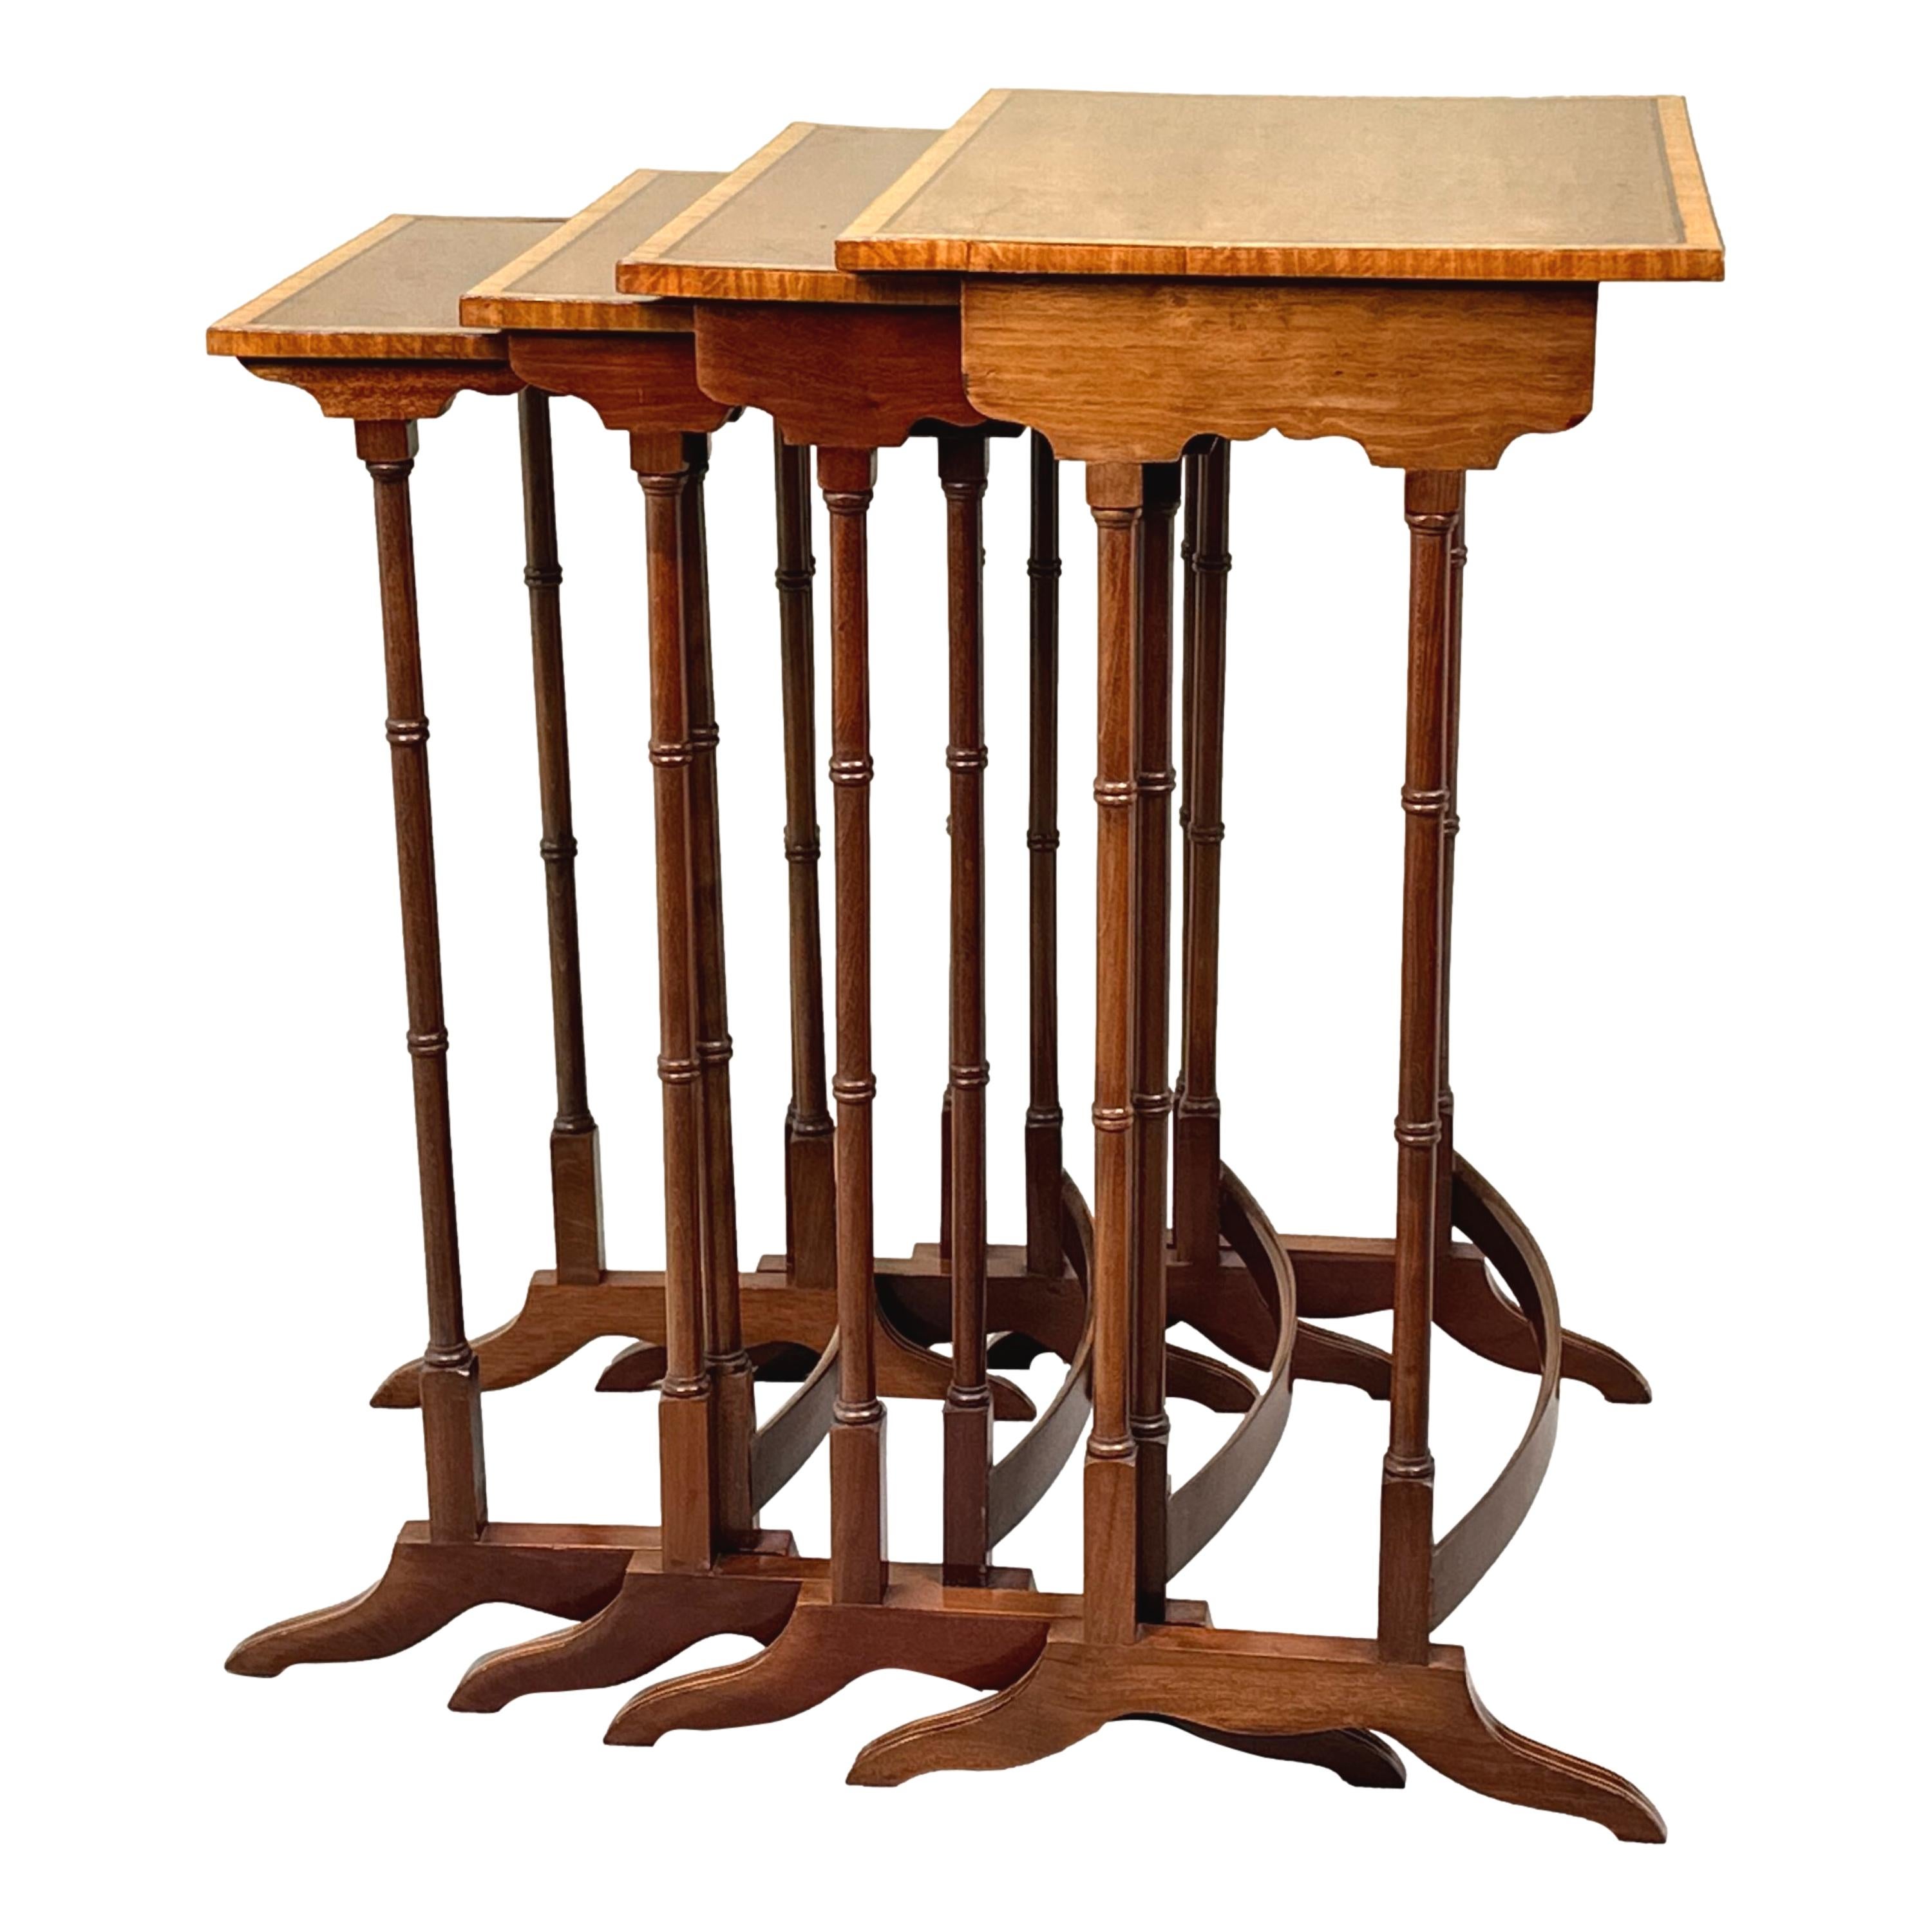 Un ensemble de quatre tables basses rectangulaires en quartetto de la fin du 19e siècle en acajou, avec des plateaux à panneaux superbement figurés, des filets ébonisés et des bandes transversales en bois satiné, reposant sur d'élégants supports